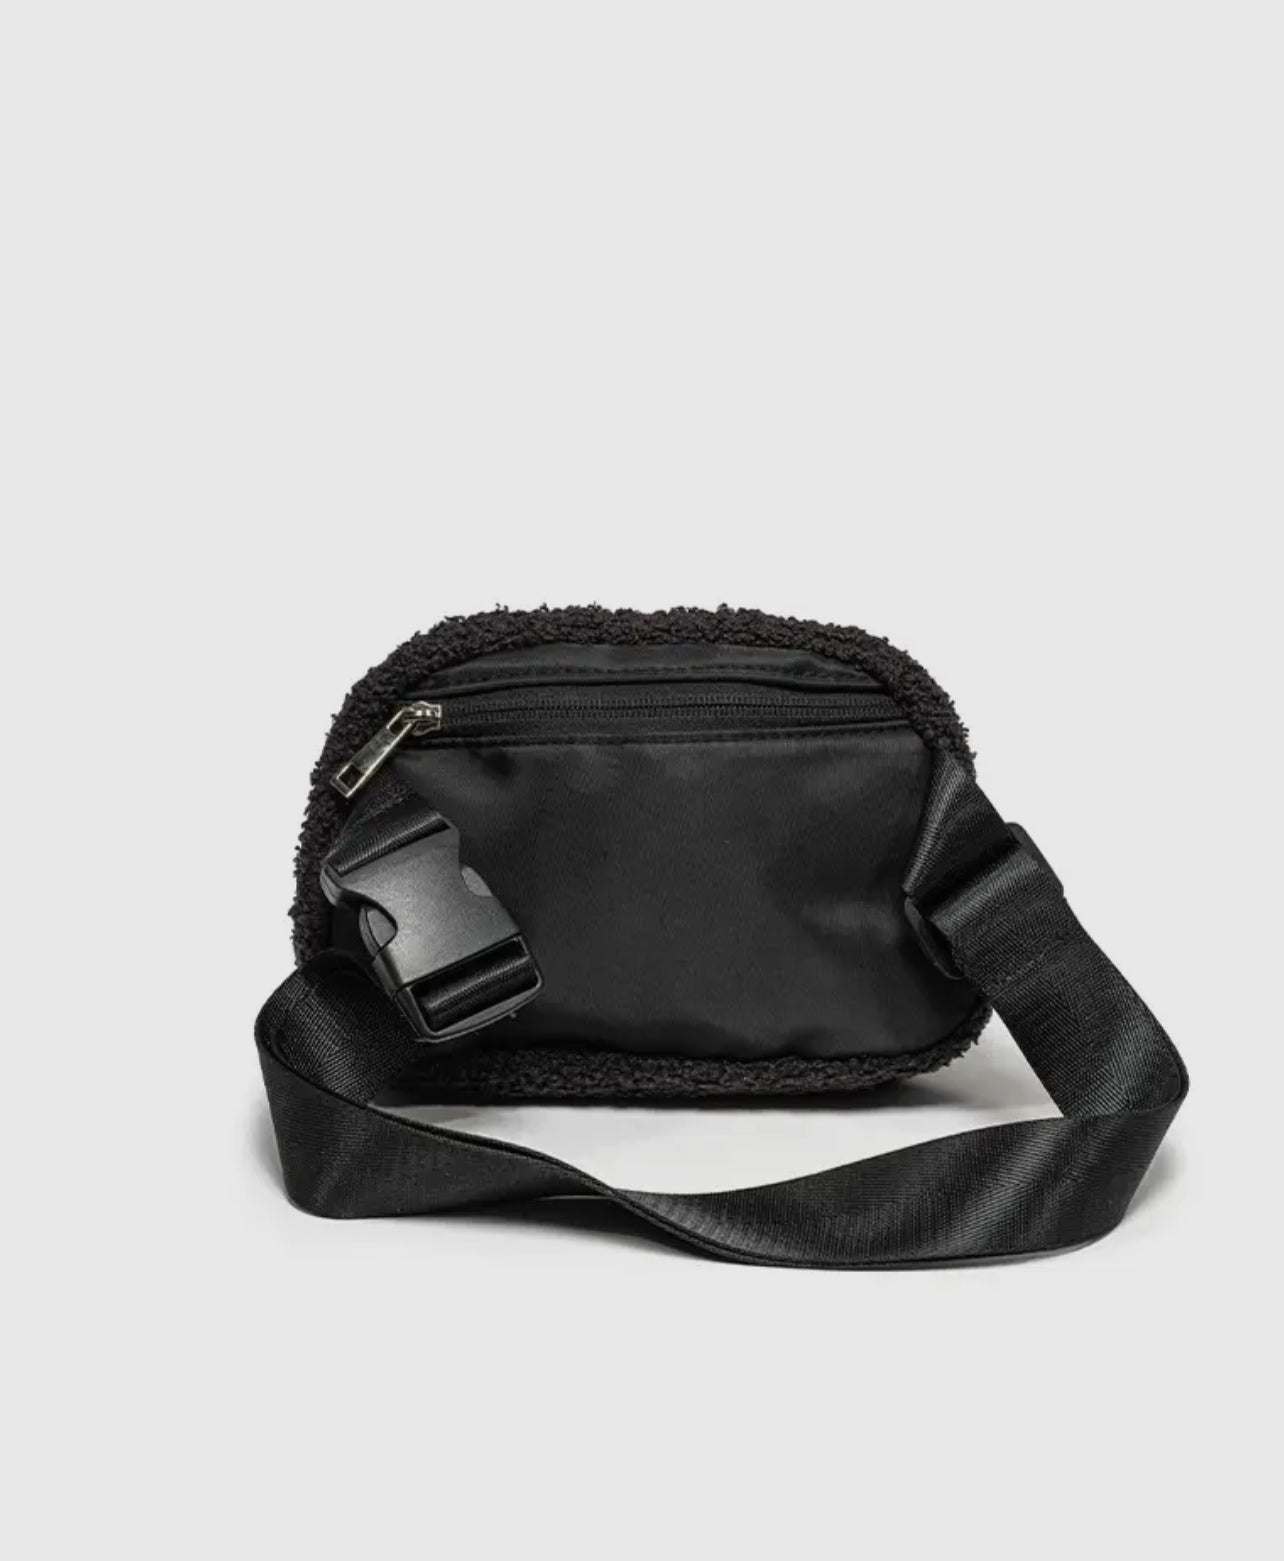 Black & White Checkered Belt Bag